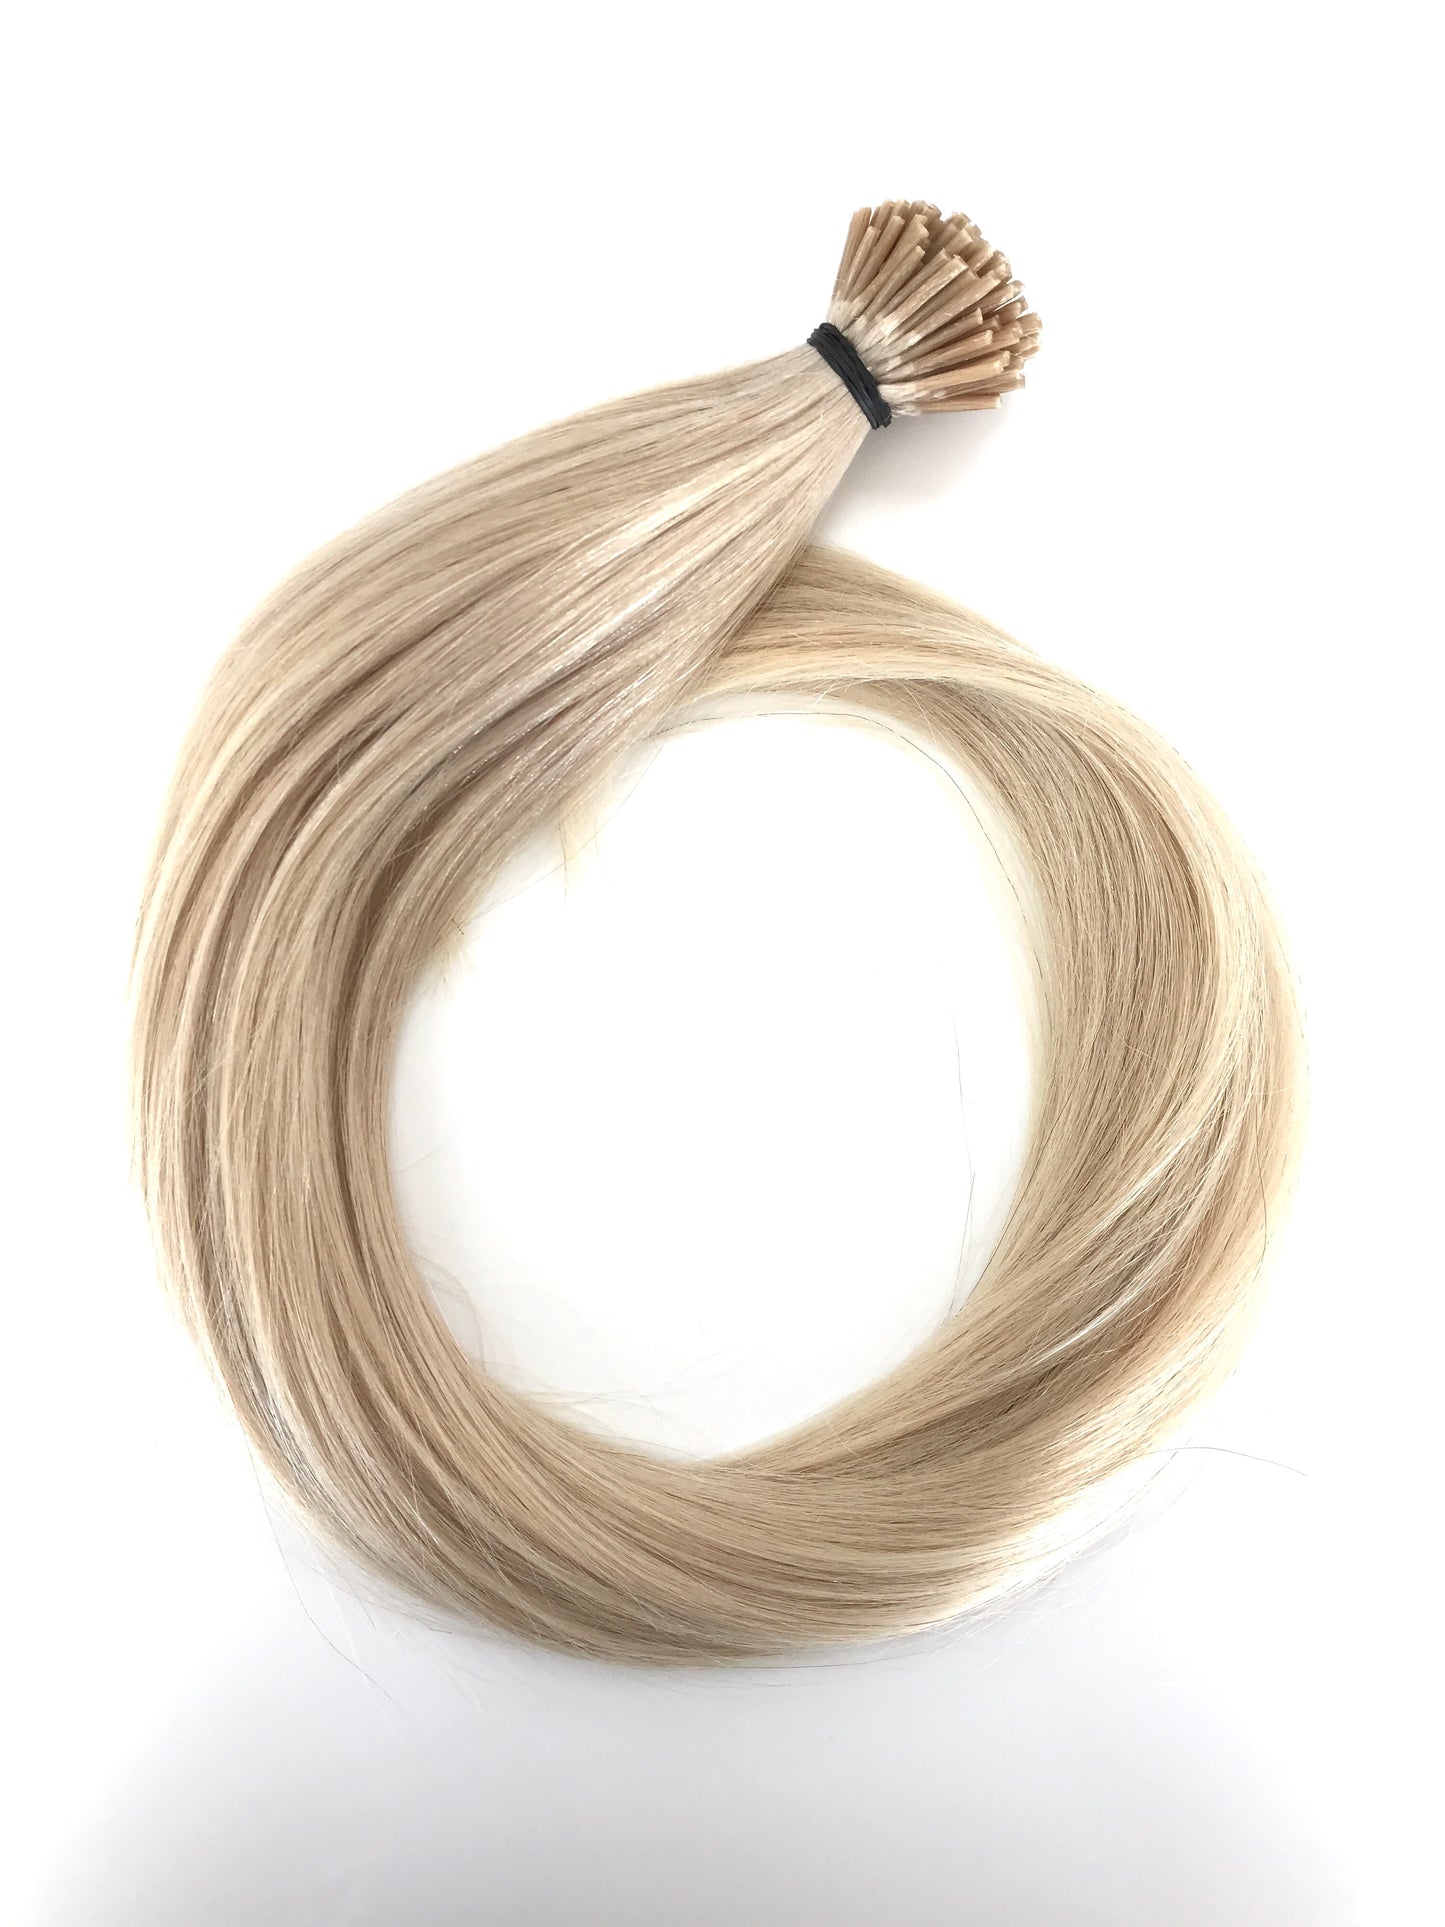 תוספות שיער אנושיות בתולה רוסית, 0.7 גרם i-Tip Micro Rings-שיער ויופי בתולה, תוספות השיער הטובות ביותר, שיער אנושי בתולה אמיתי.